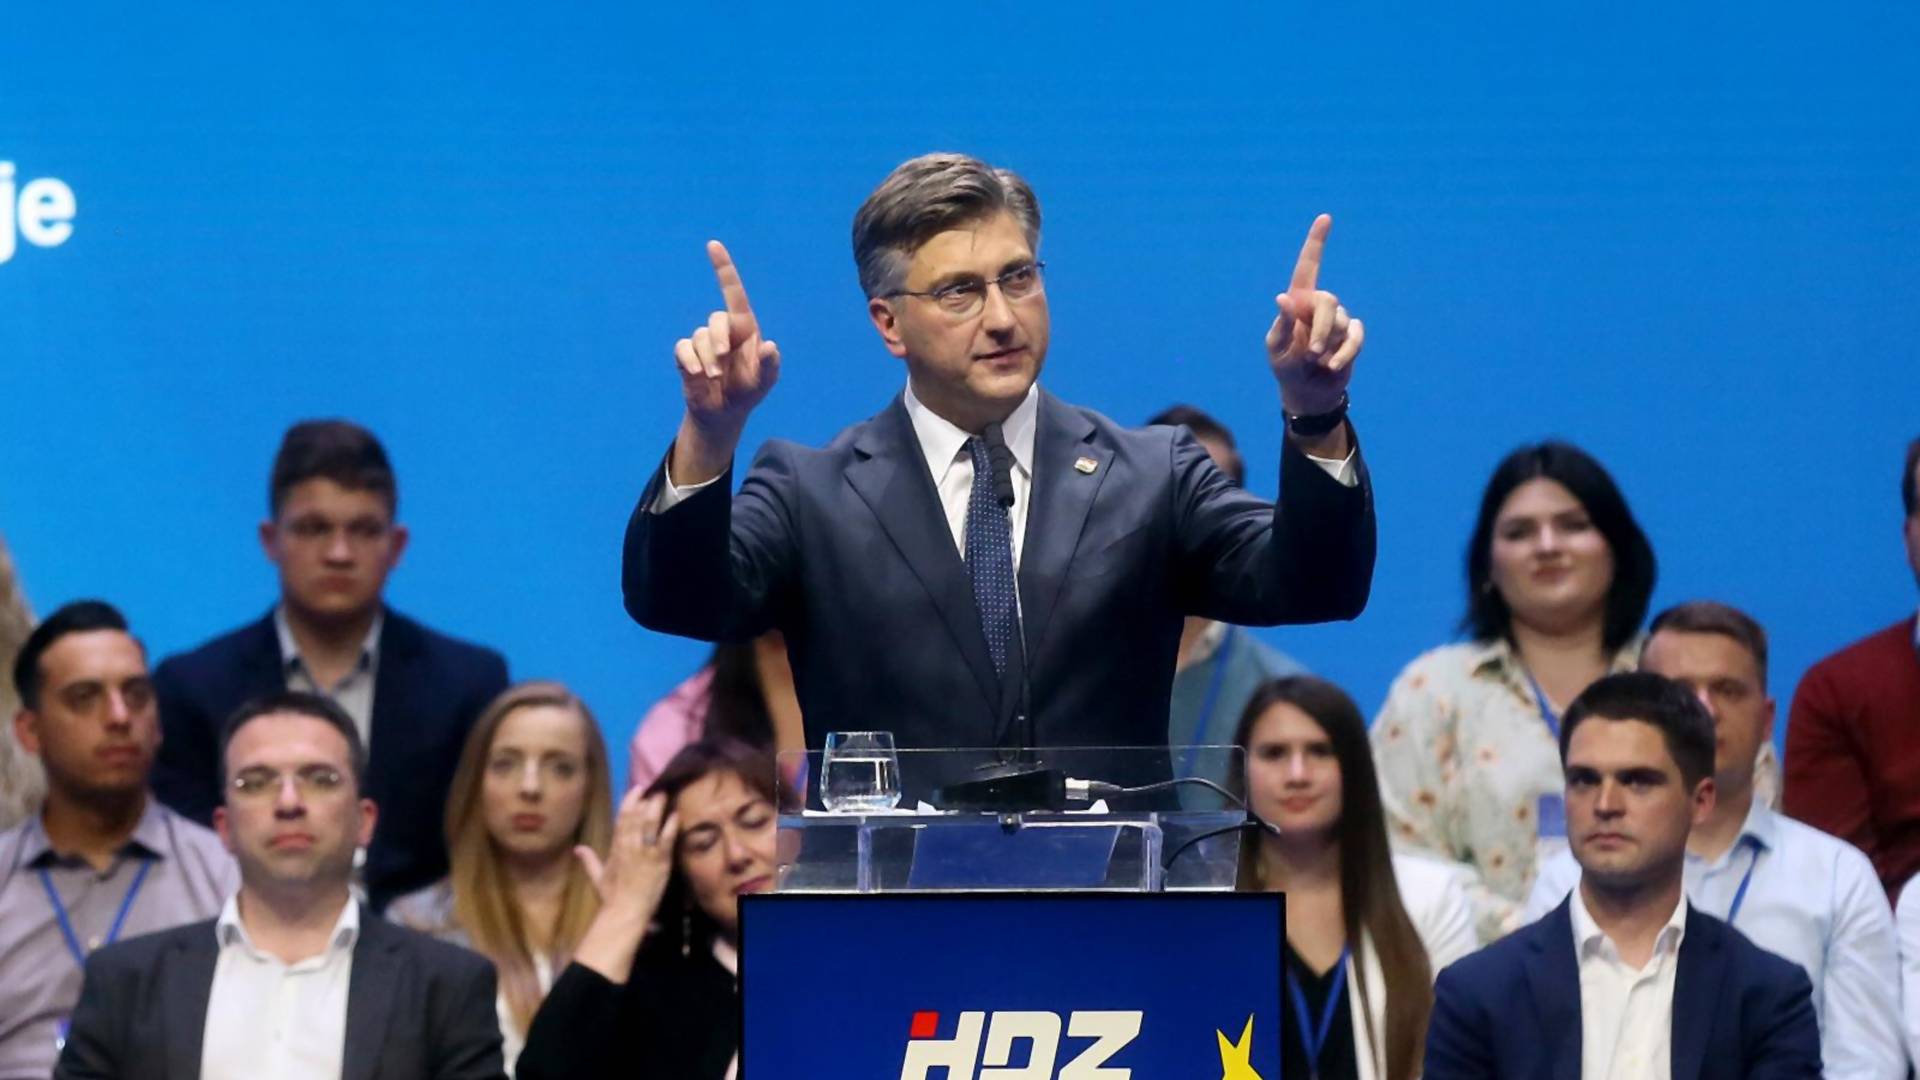 Da li ste čovek ili član HDZ? - obračun hrvatskog portala i vladajuće stranke koji je potekao u kafiću, a eskalirao na mrežama